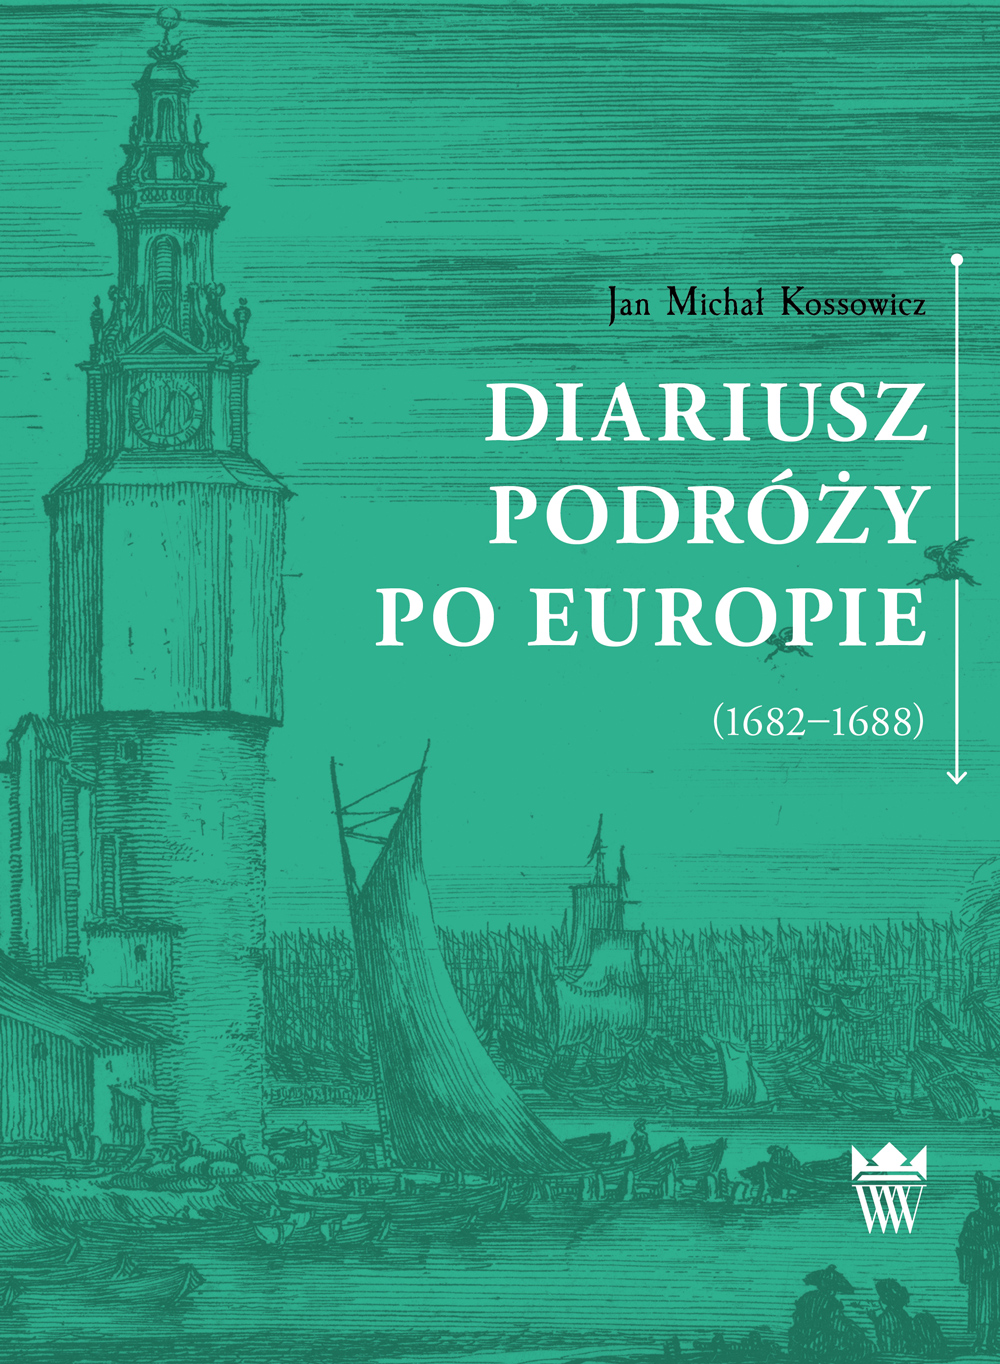 Jan Michał Kossowicz, Diariusz podróży po Europie (1682–1688)